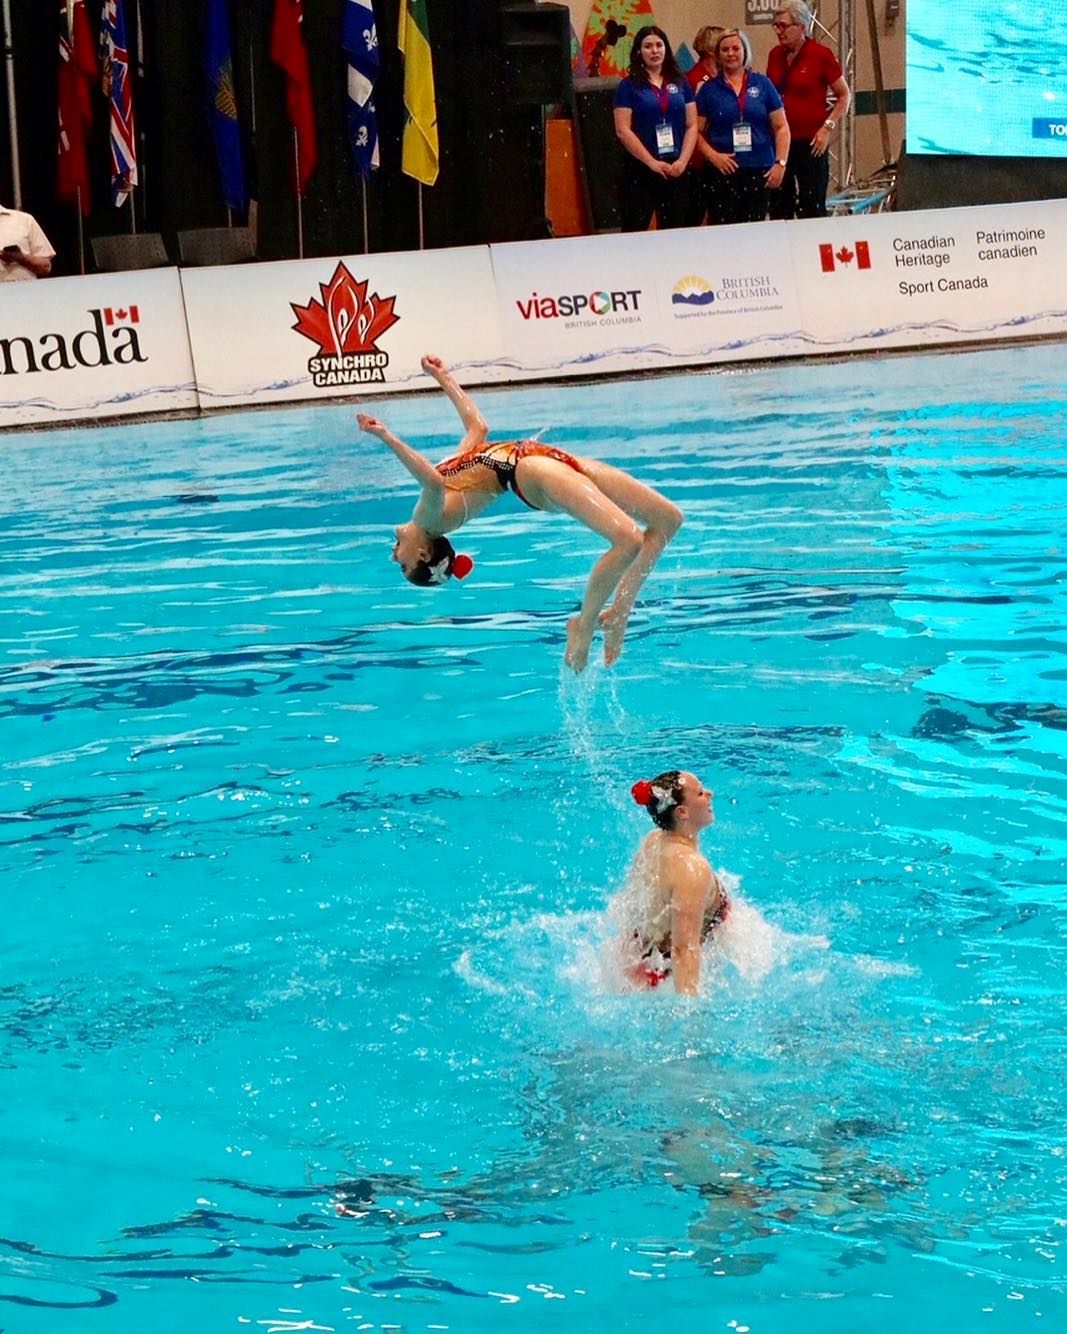 Swimmer doing back flip